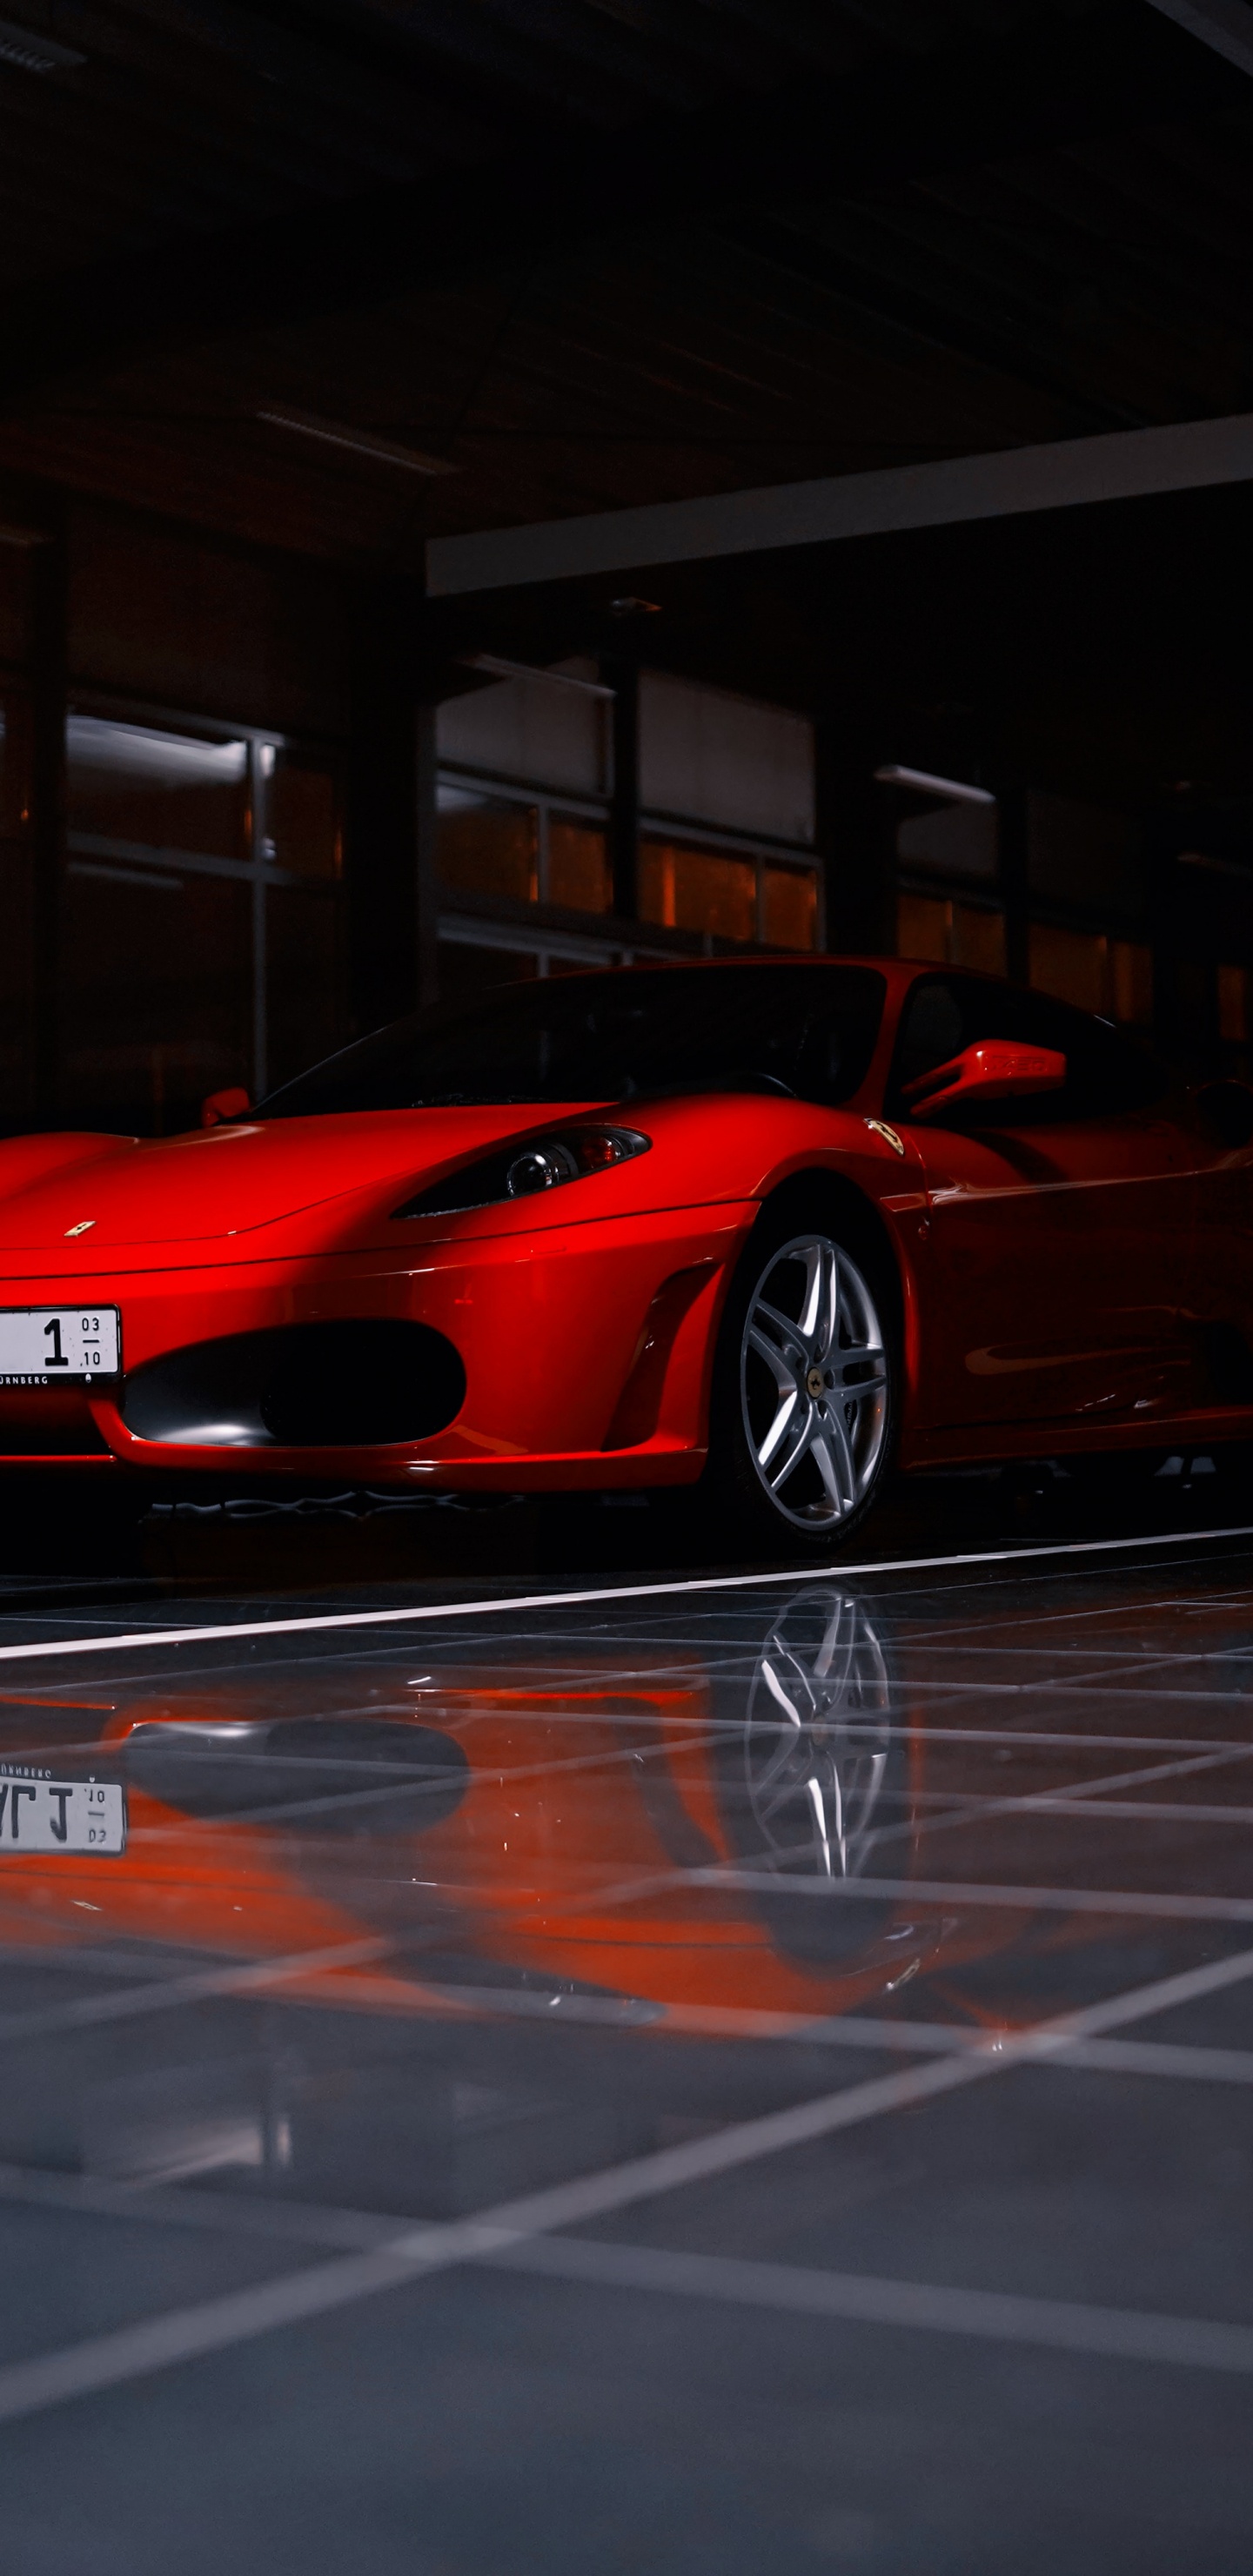 Ferrari 458 Italia Rojo Estacionado en el Estacionamiento. Wallpaper in 1440x2960 Resolution